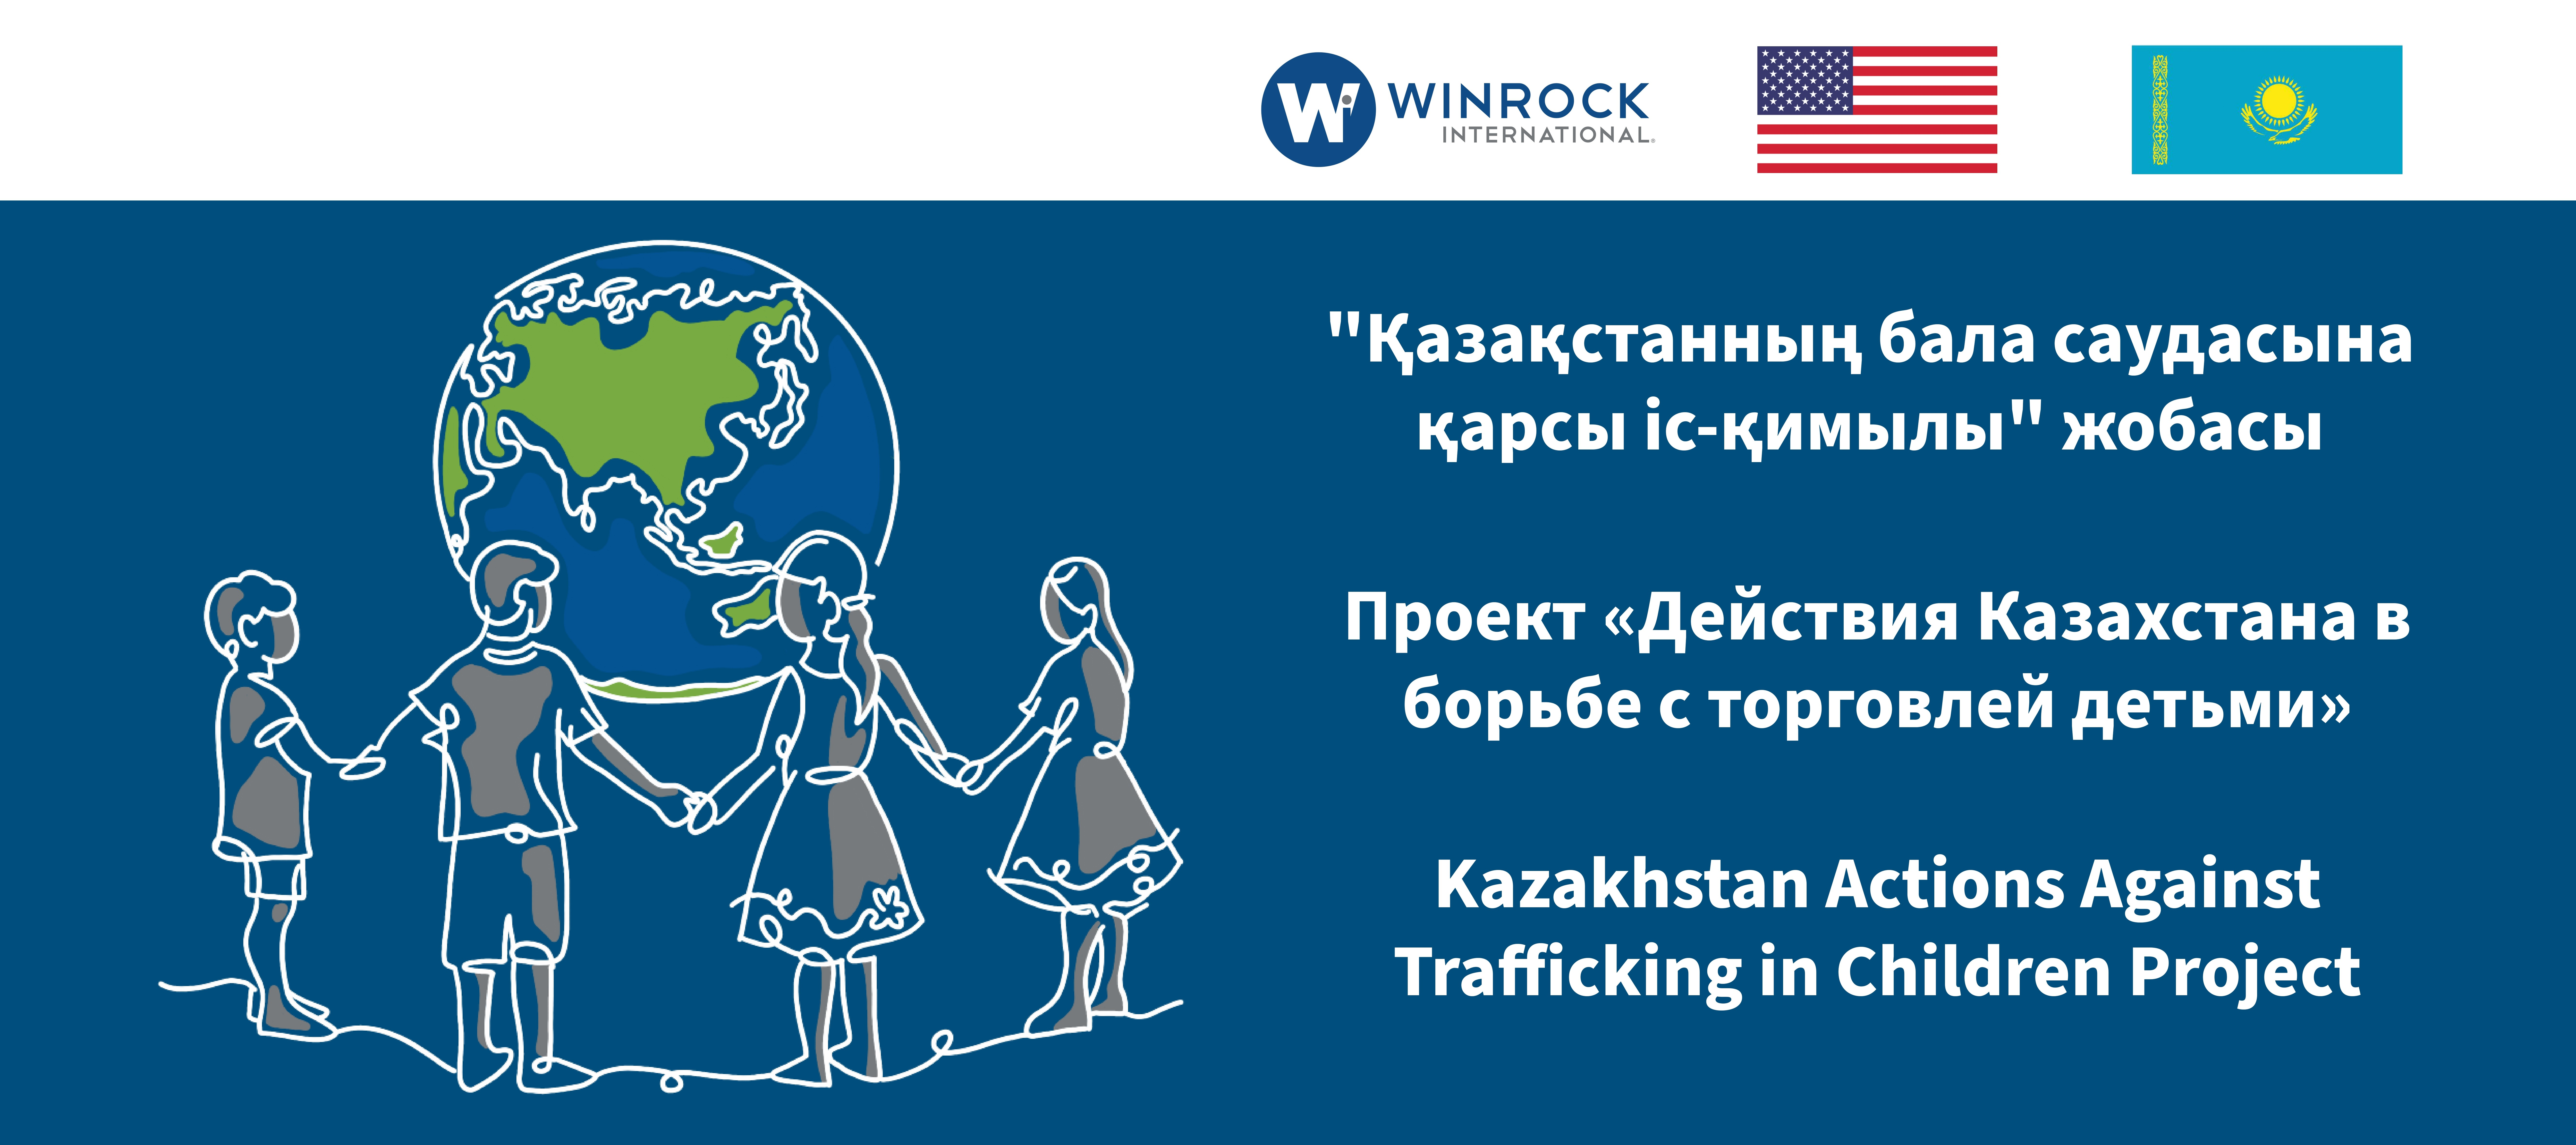 социальный проект "Действия Казахстана по борьбе с торговлей детьми"